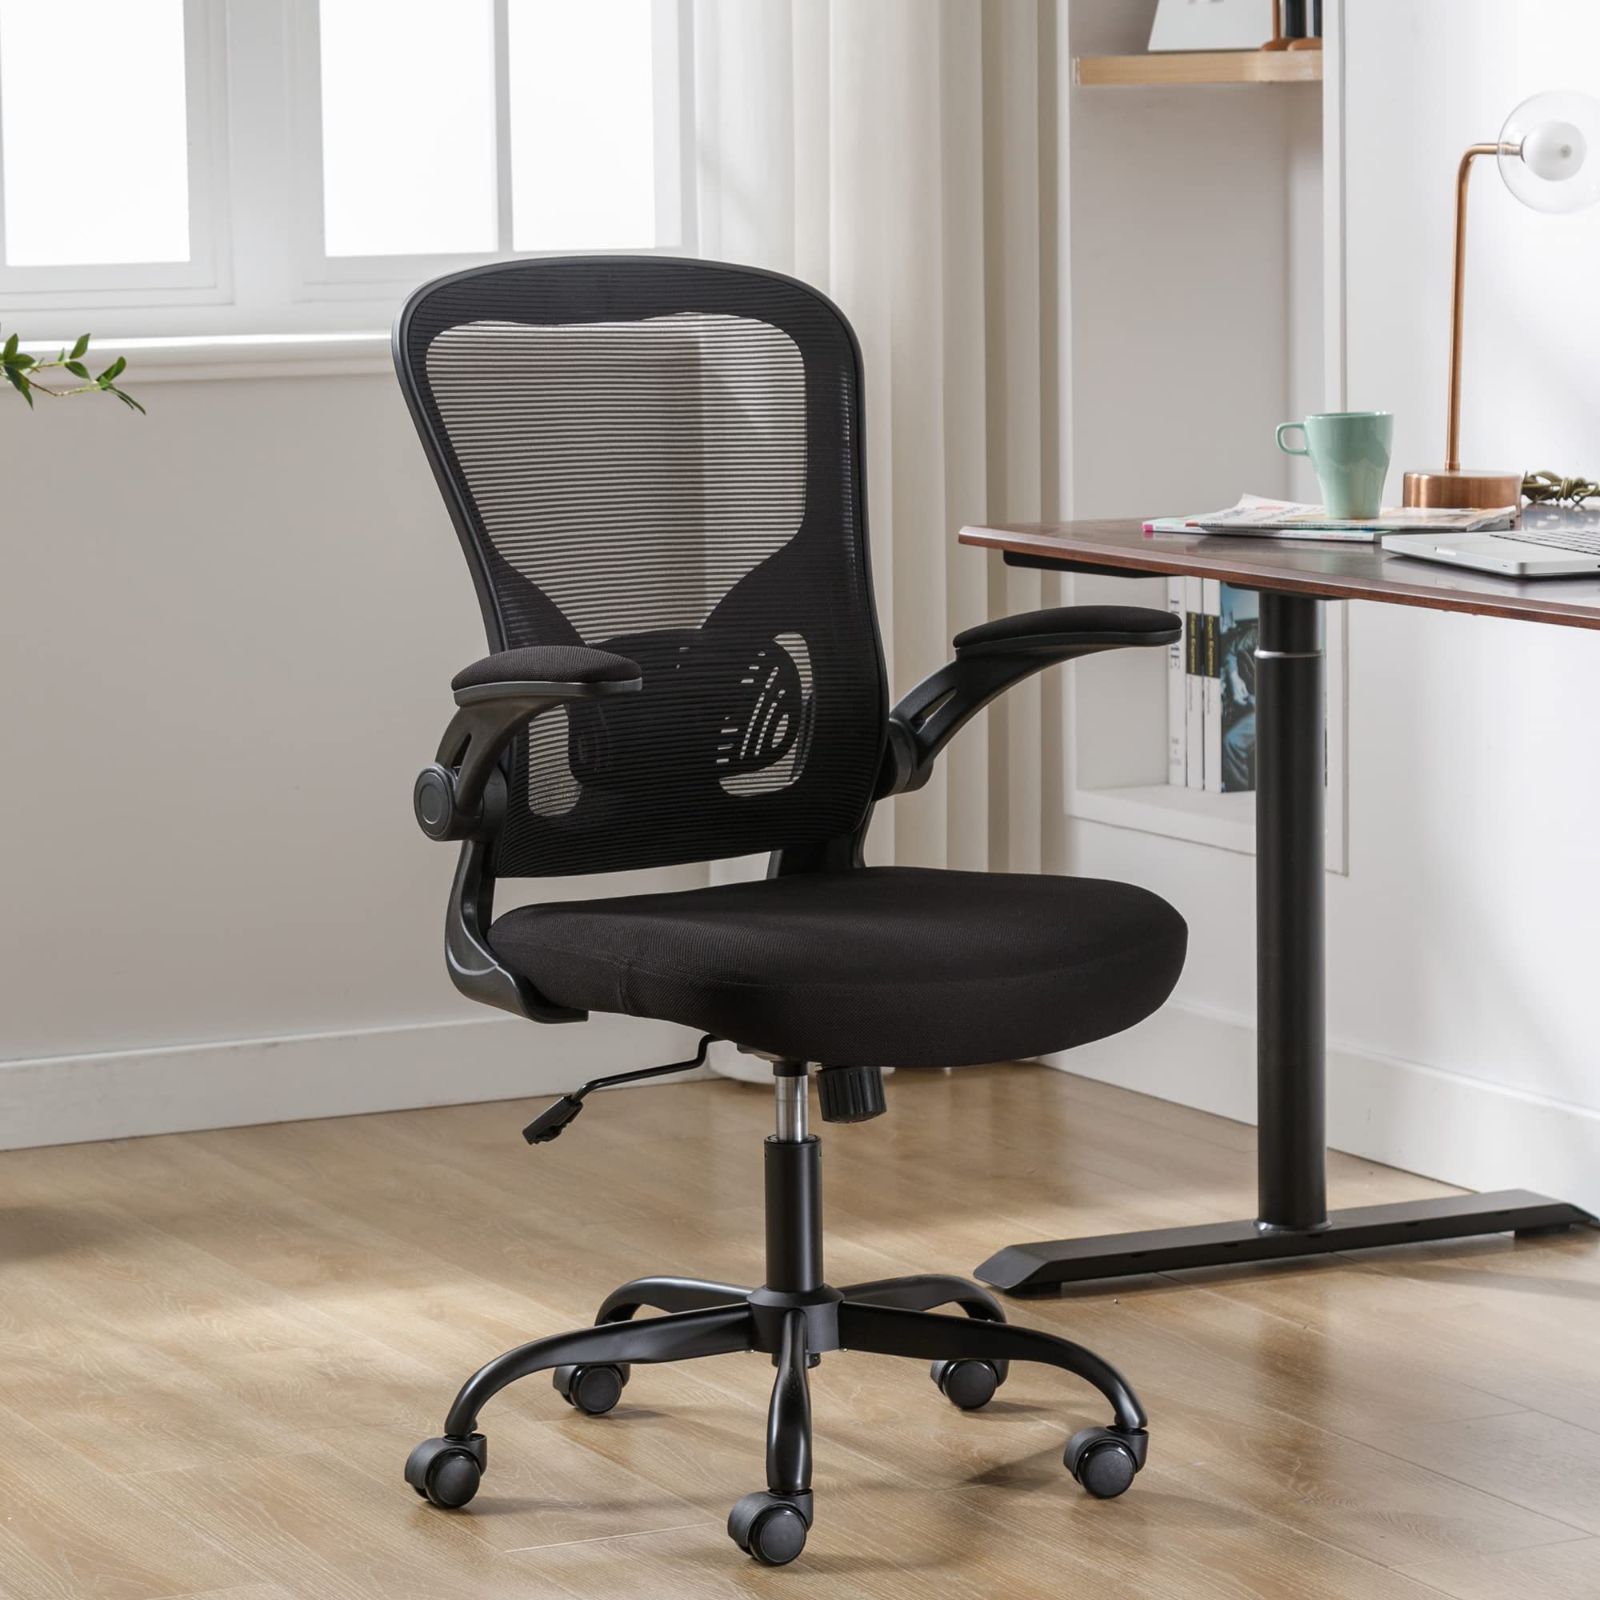 オフィス家具オフィスチェア デスクチェア Okeysen 椅子 テレワーク 疲れない 腰が痛